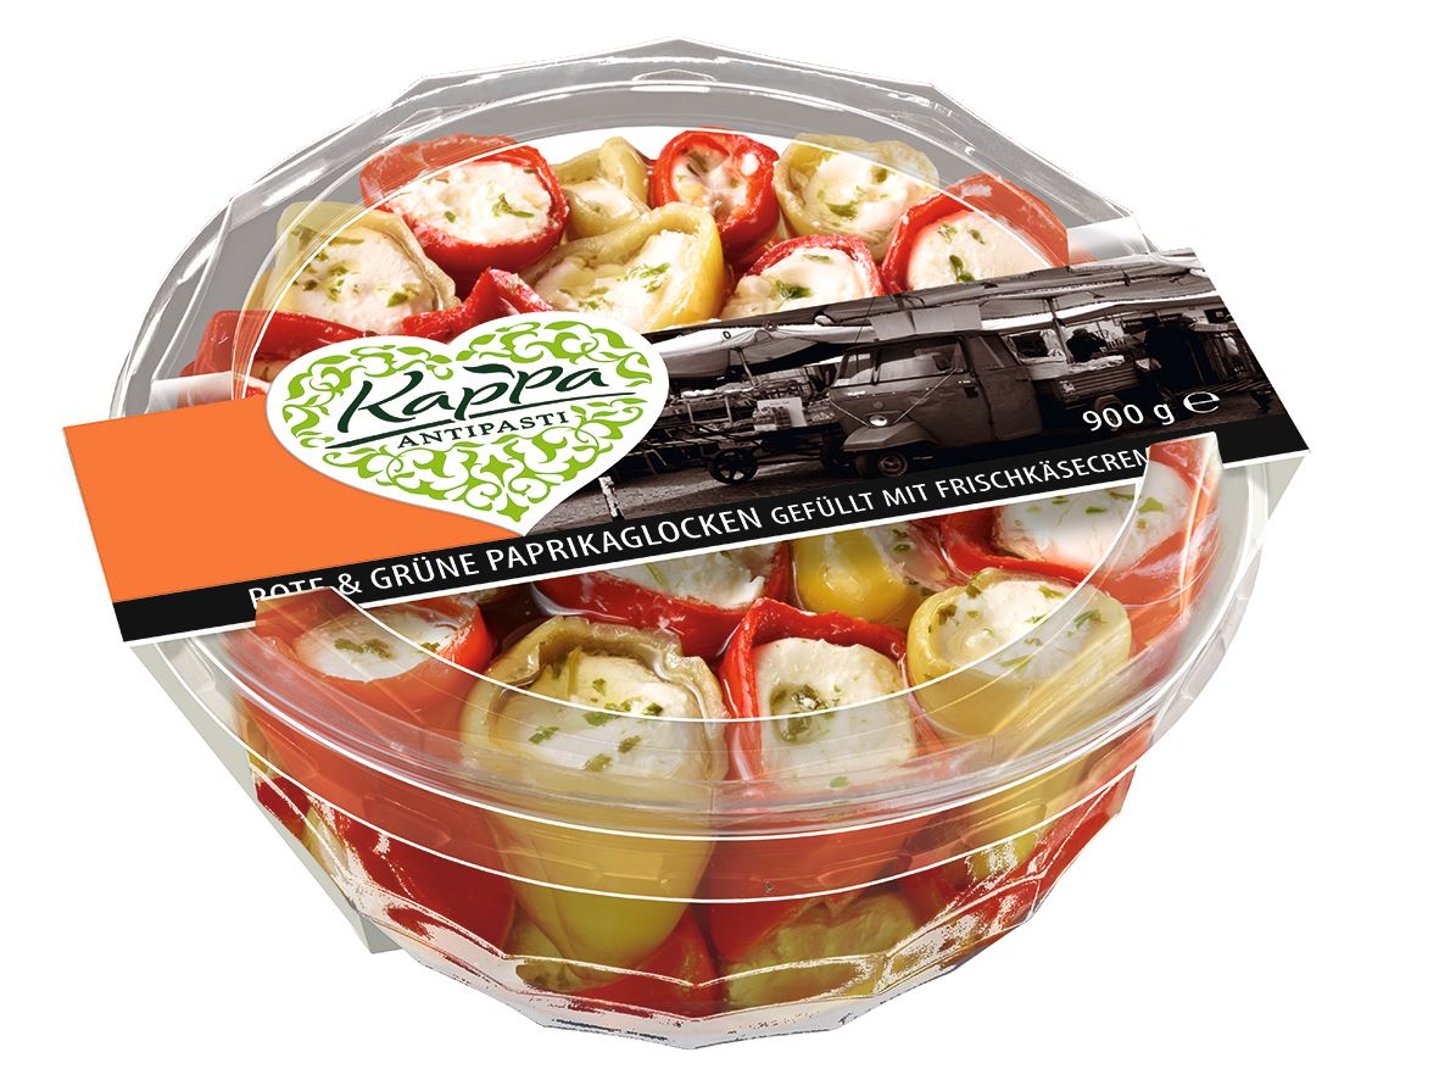 Kappa - Rote & Grüne Paprikaglocken gefüllt mit Frischkäse gekühlt - 900 g Packung